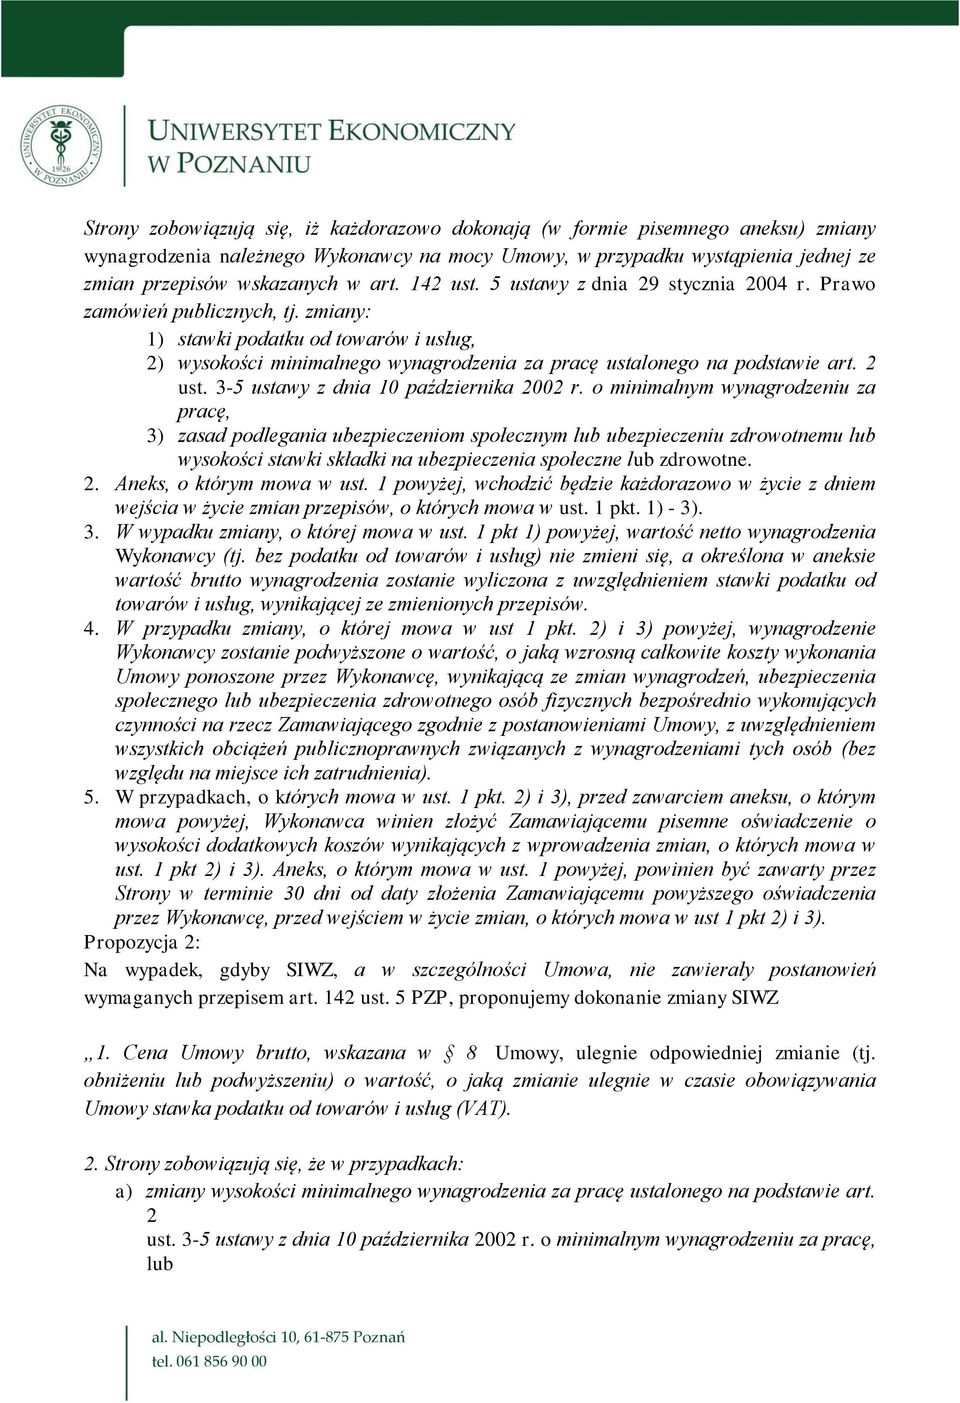 2 ust. 3-5 ustawy z dnia 10 października 2002 r.